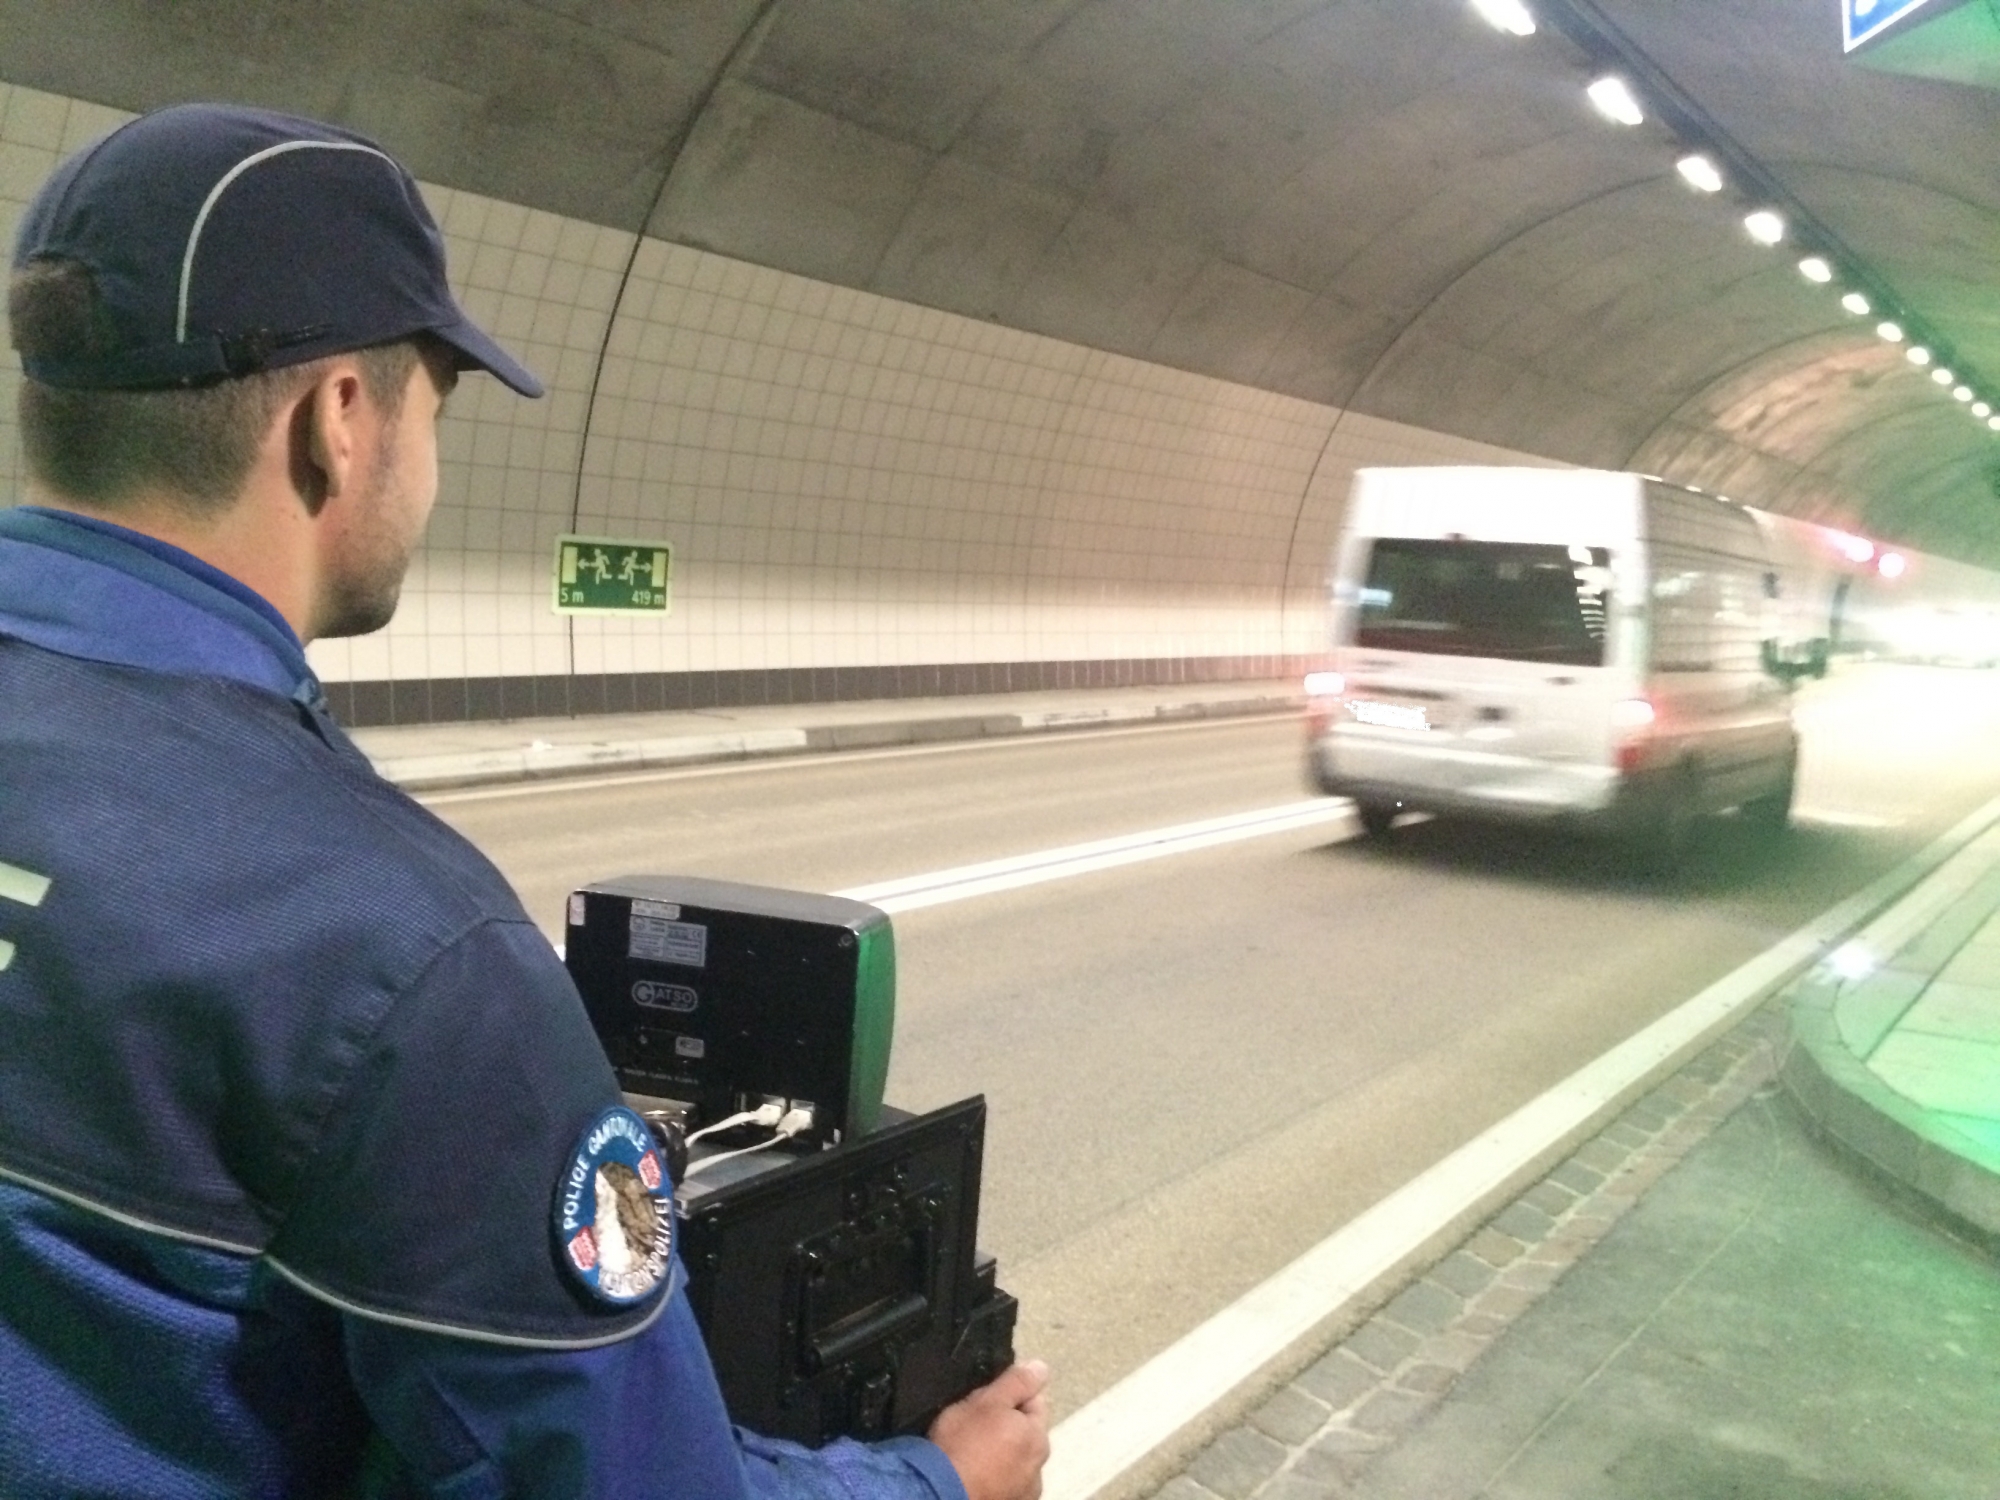 Un Valaisan de 28 ans a été flashé à 162 km/h dans un tunnel situé dans le Haut-Valais.